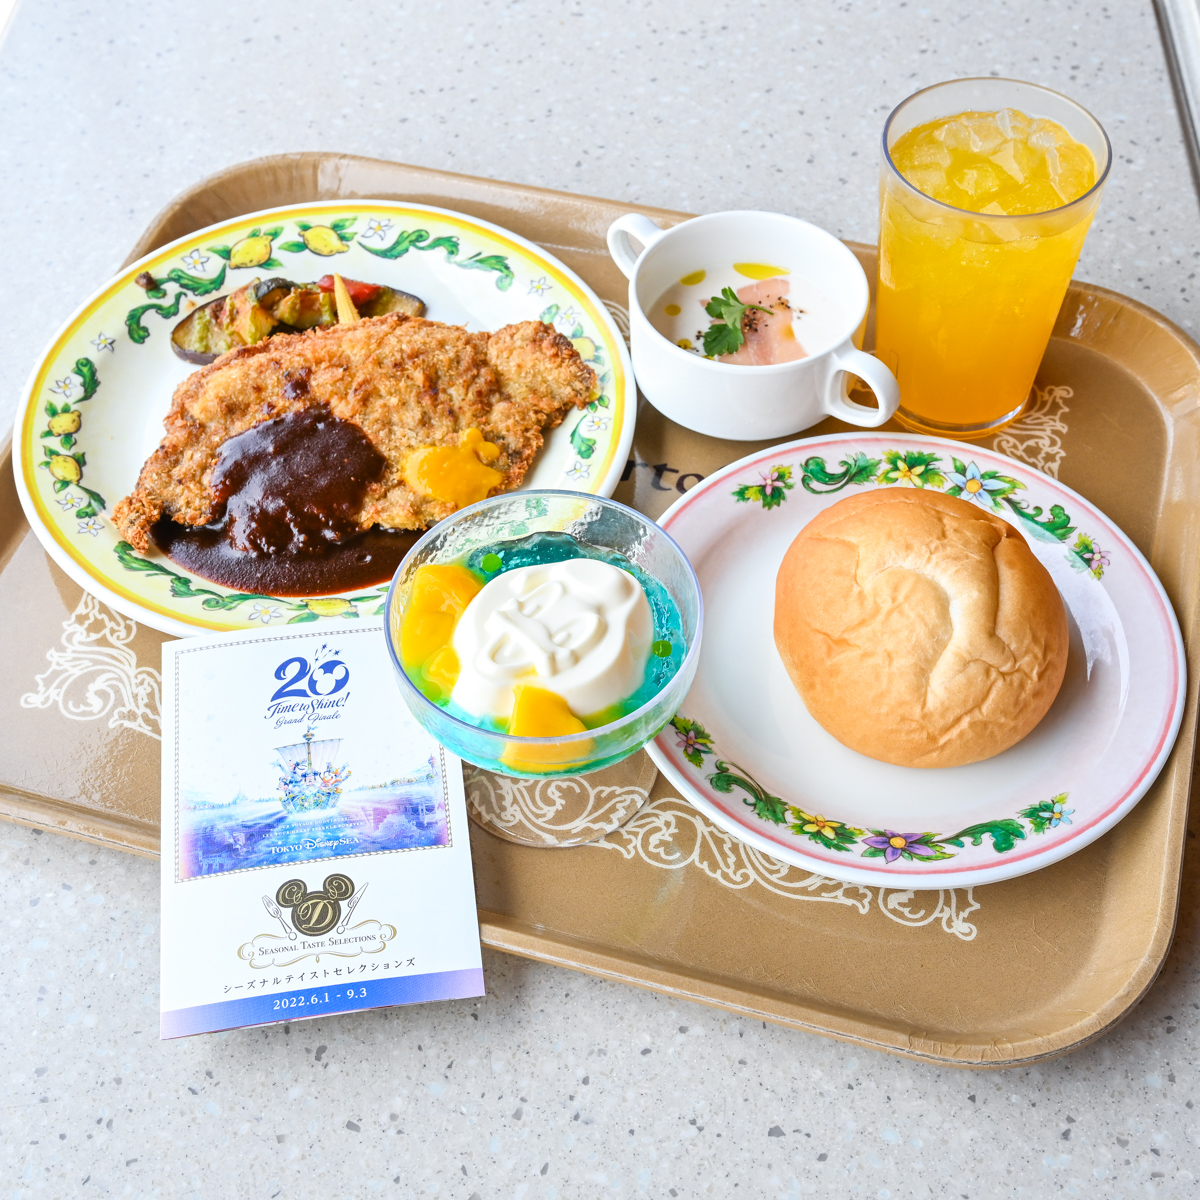 ドナルドモチーフのデザートも カフェ ポルトフィーノ 22夏 東京ディズニーシー周年スペシャルセット